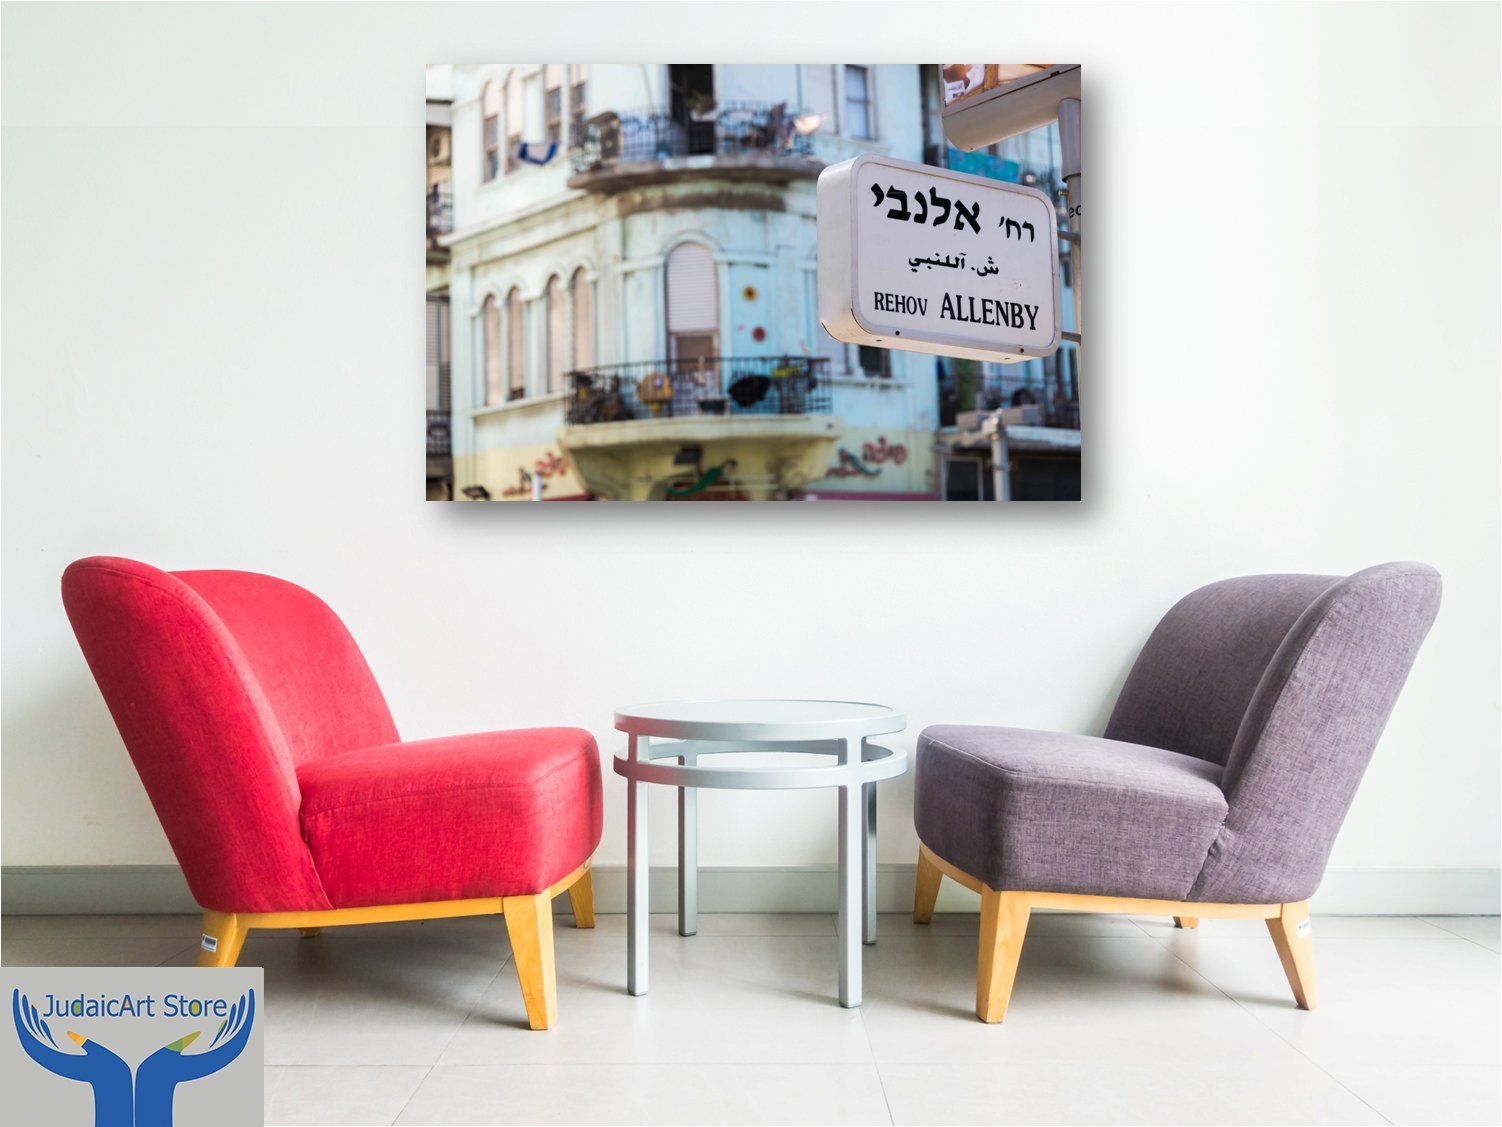 Rehov Allenby - Tel-Aviv - Israel Fine Art Photography AHAVART 